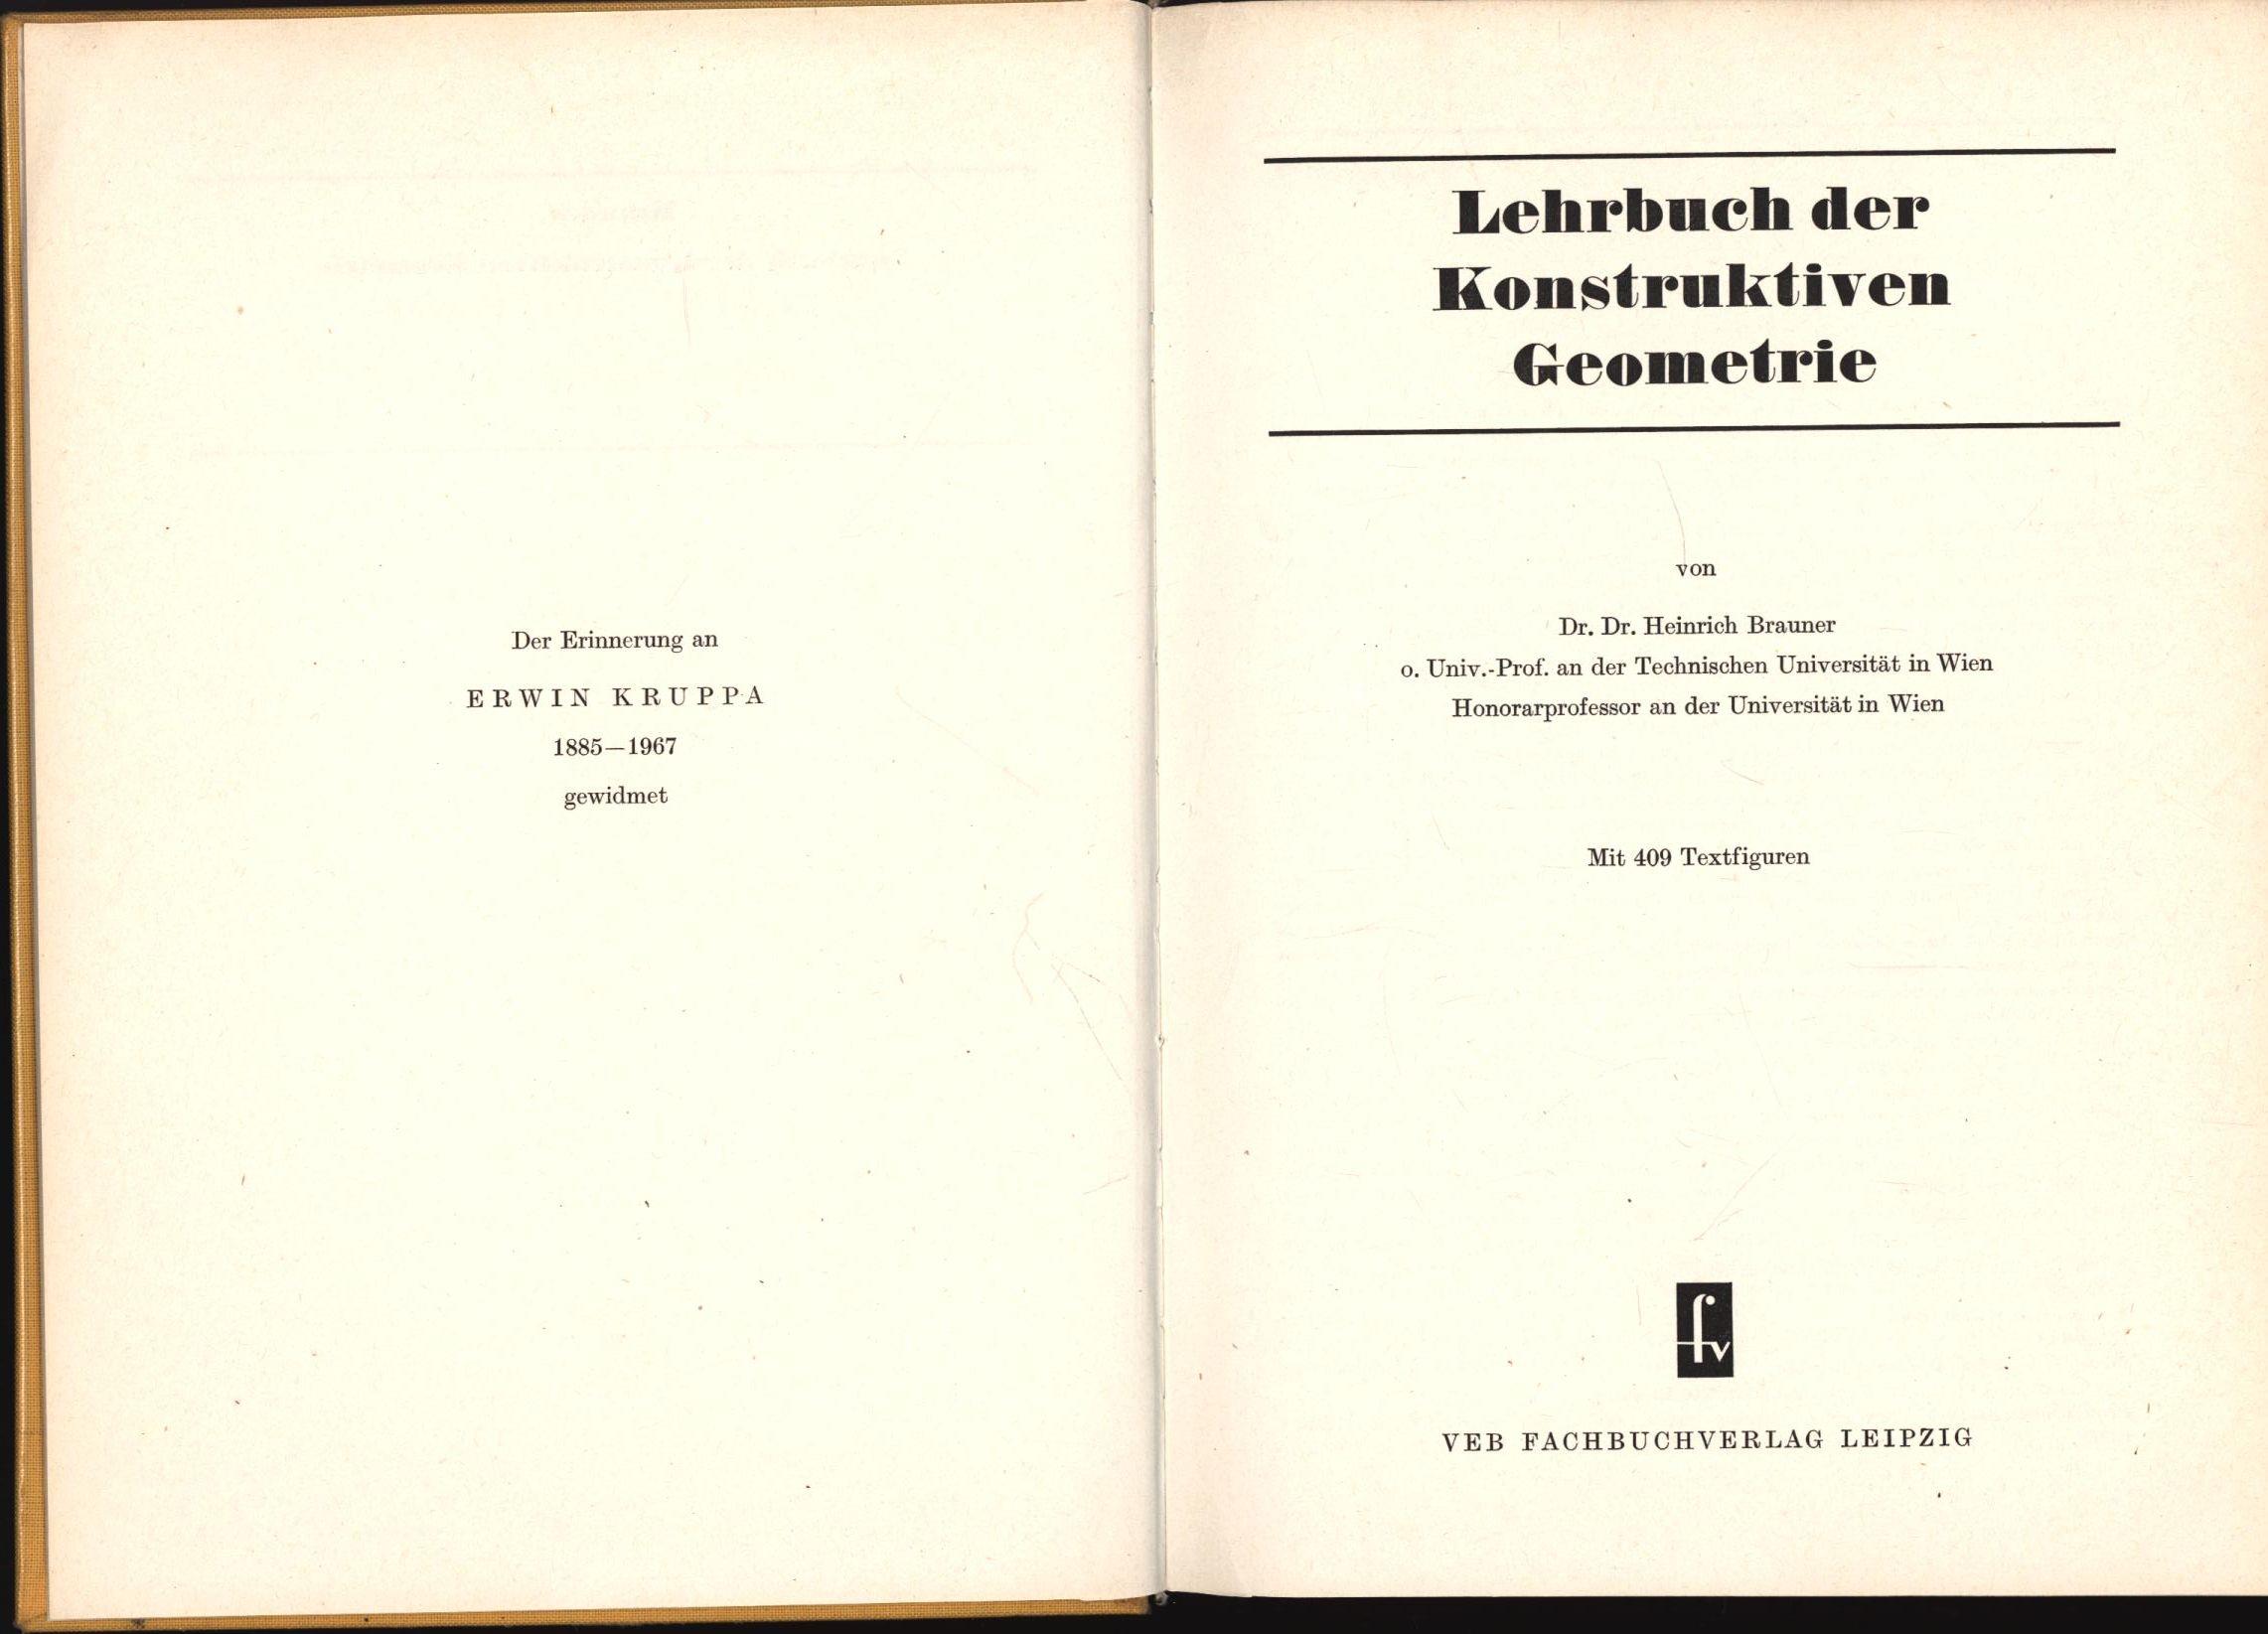 Lehrbuch der Konstruktiven Geometrie;409 Textfiguren - Brauner, Heinrich